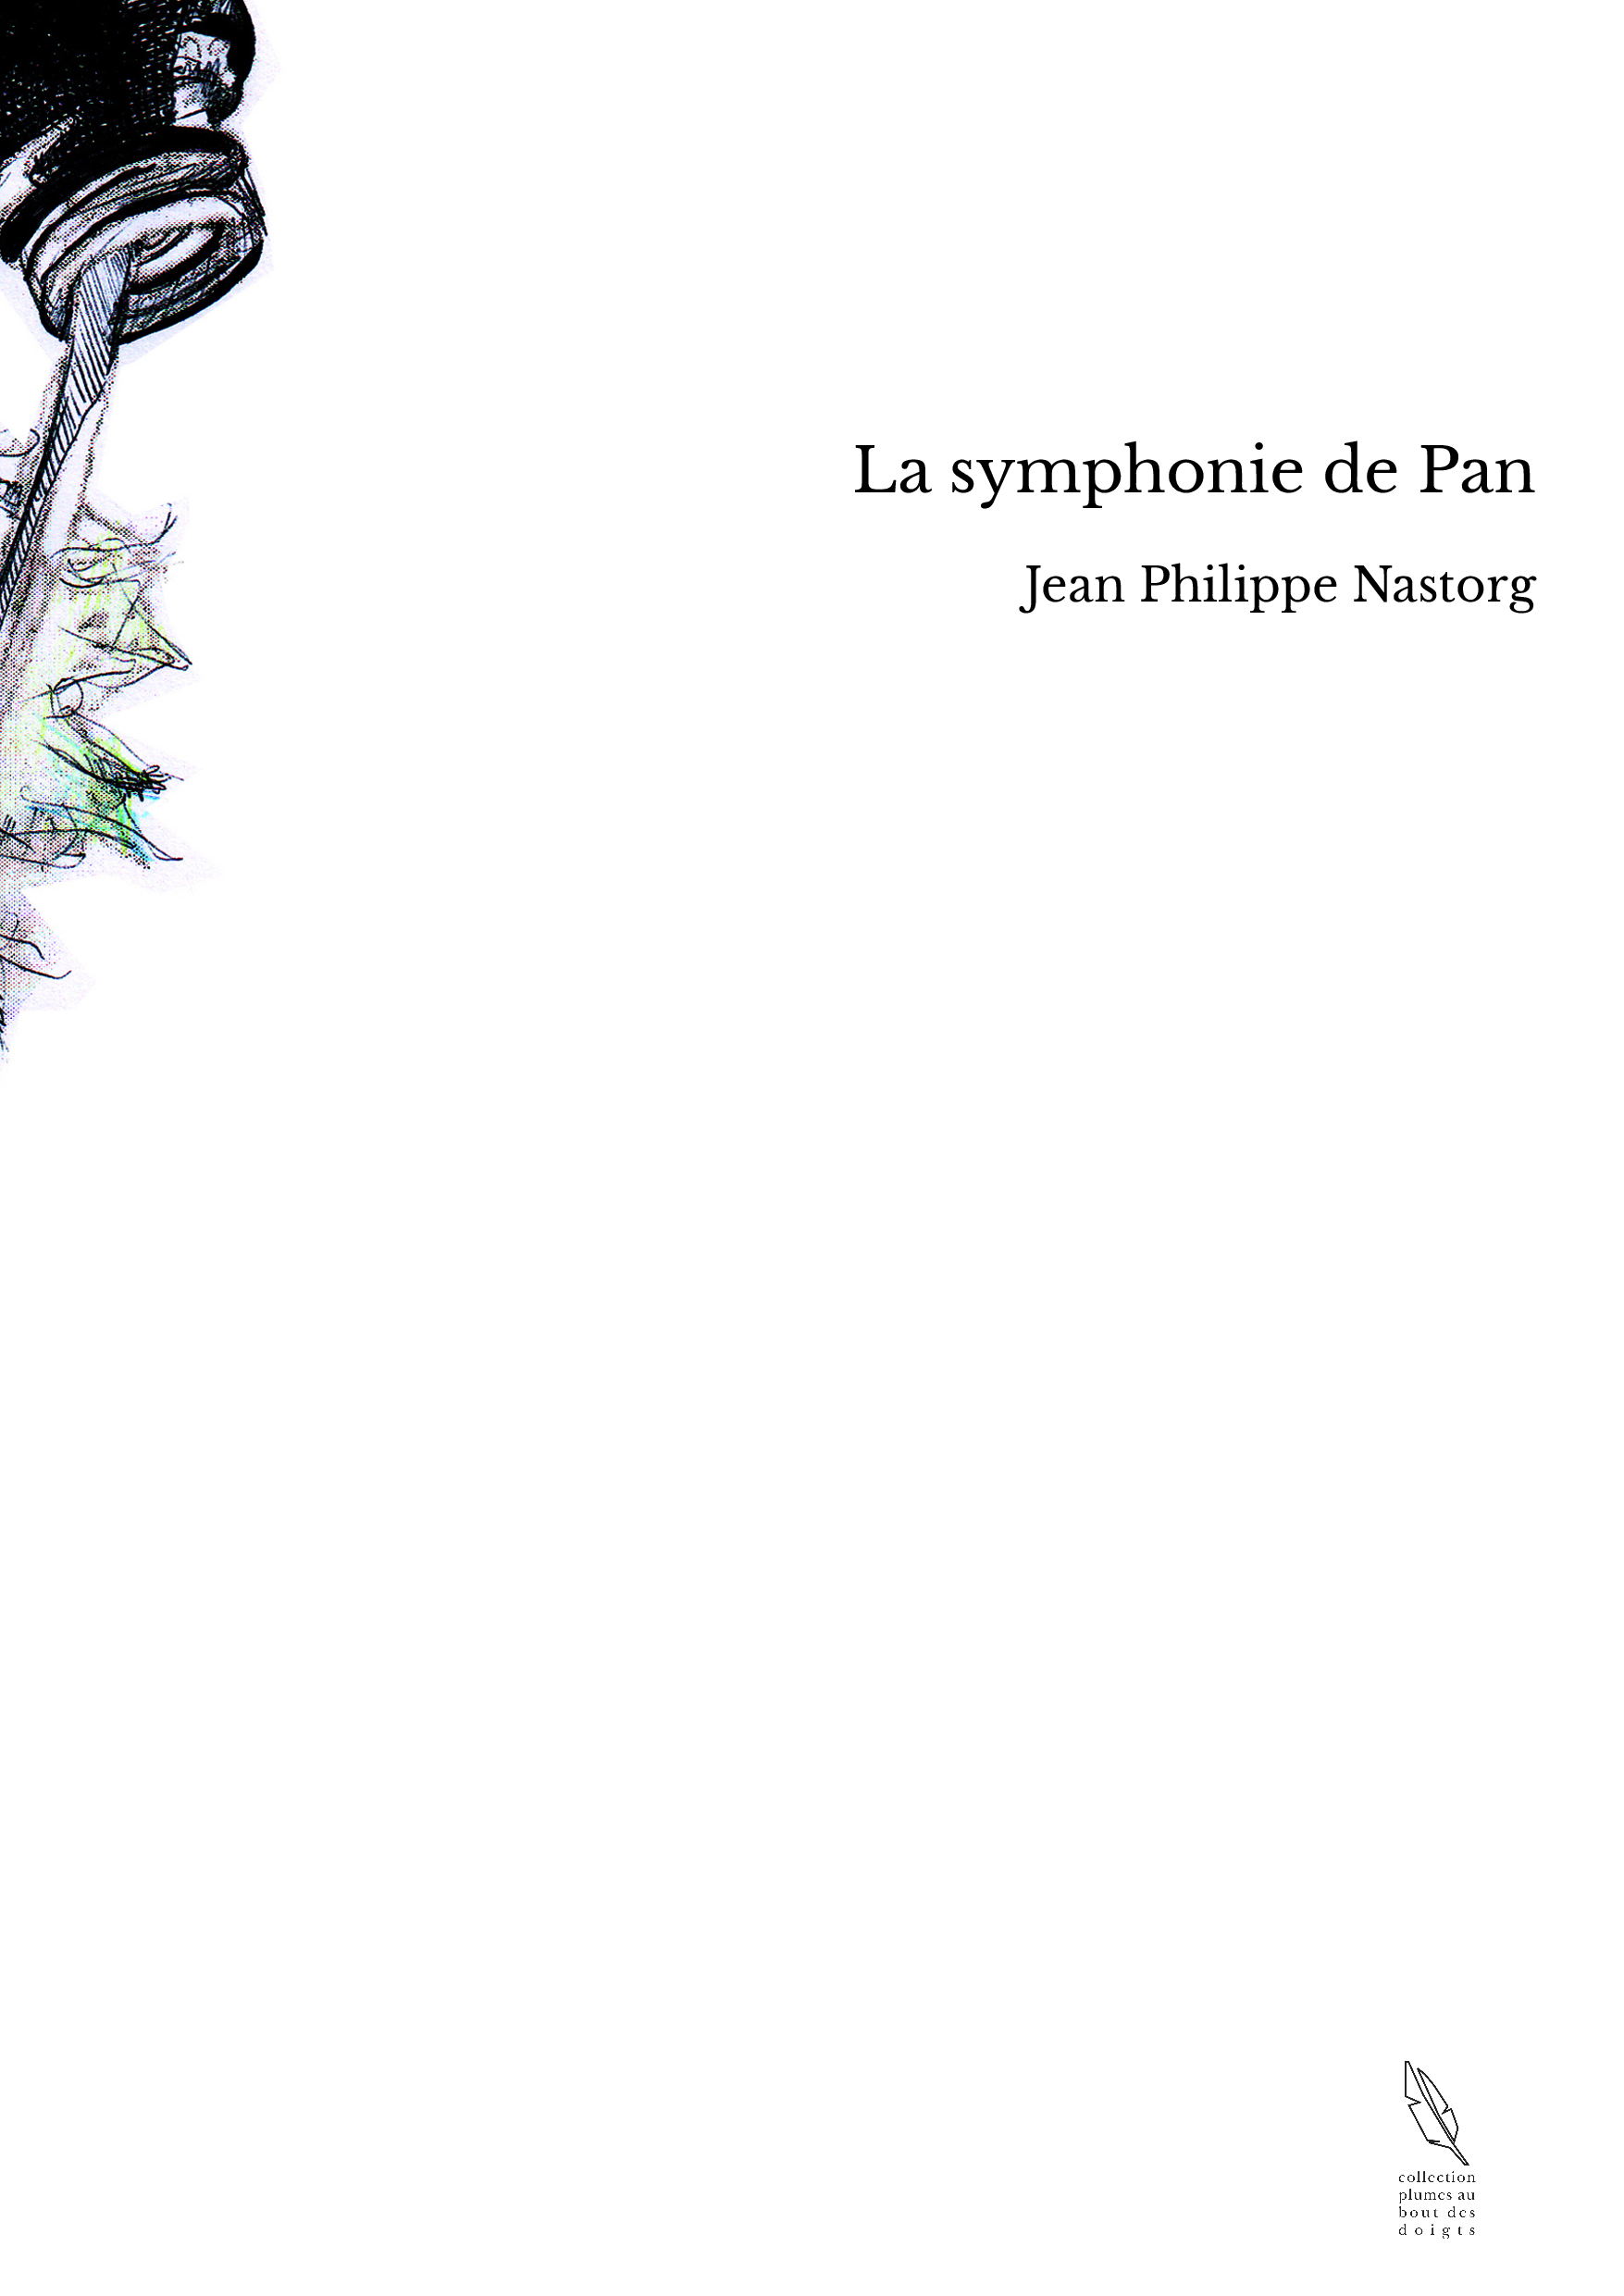 La symphonie de Pan